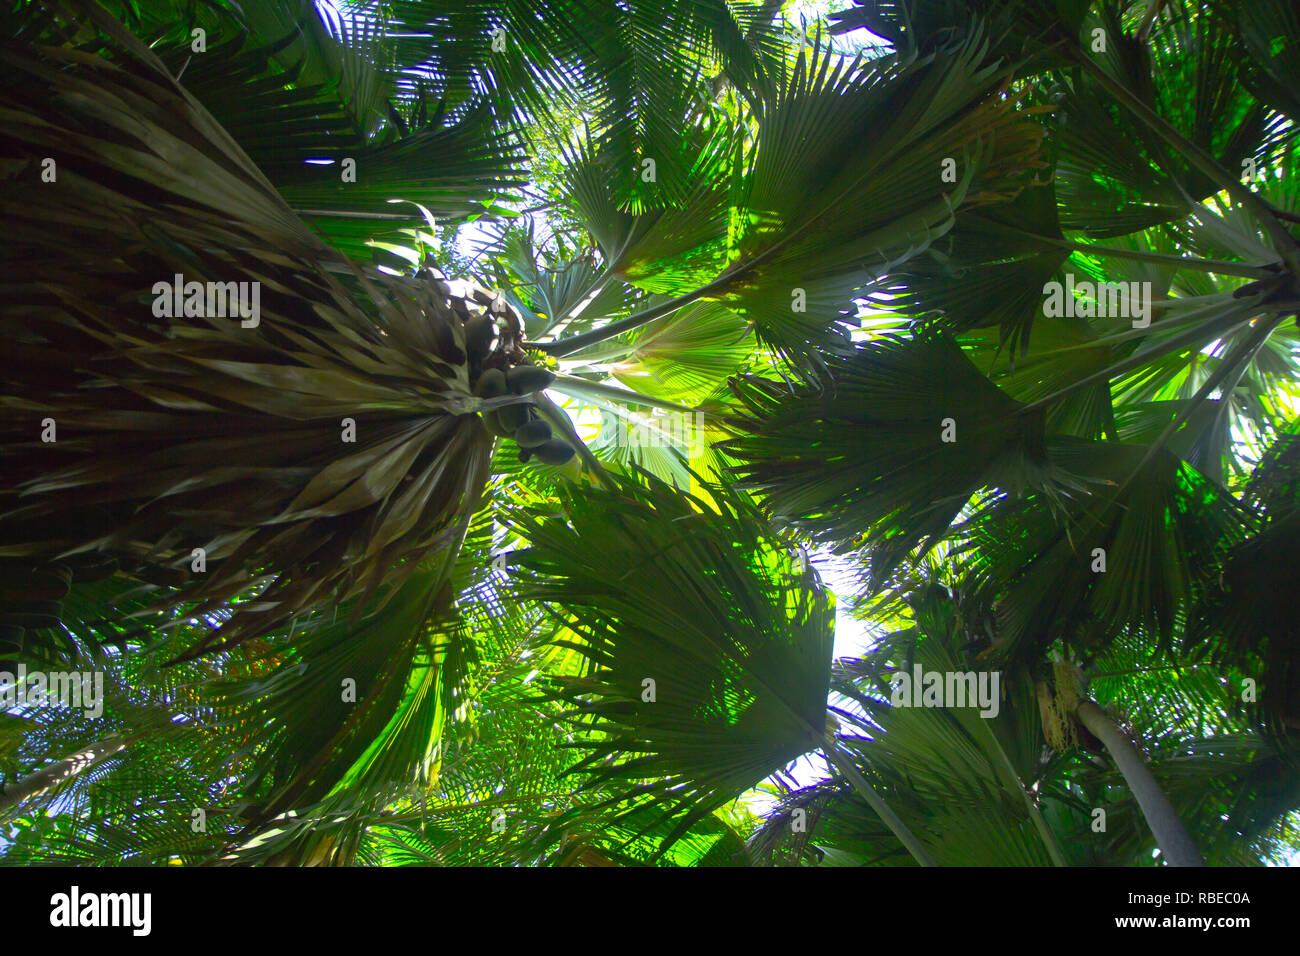 L'écrou et arbre de la coco de mer, une espèce de palmier originaire de l'archipel des Seychelles dans l'Océan Indien. Banque D'Images